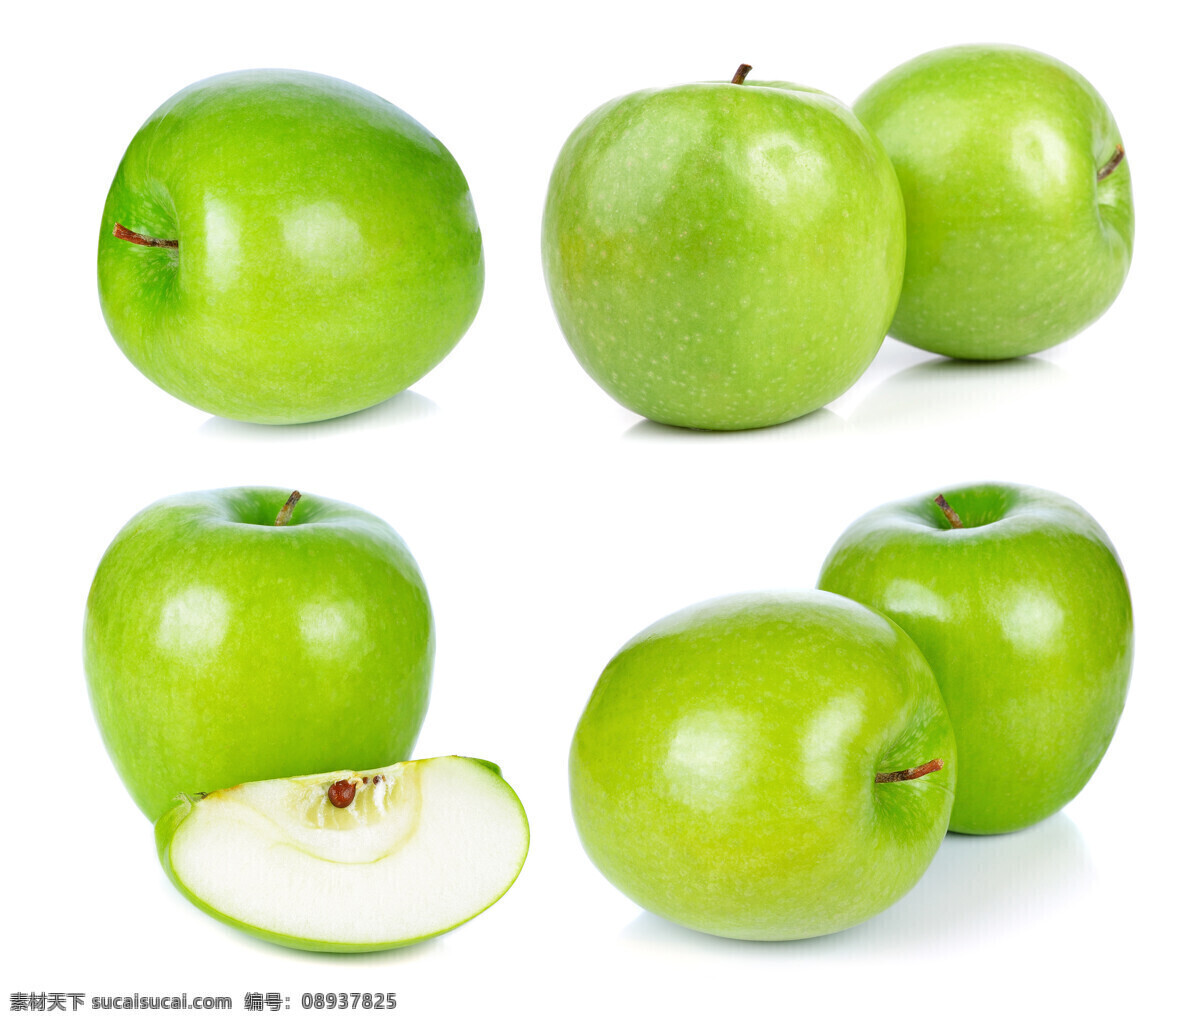 青苹果 澳洲青苹果 大苹果 苹果 绿苹果 水果 水壶 静物 食物 美食 生物世界